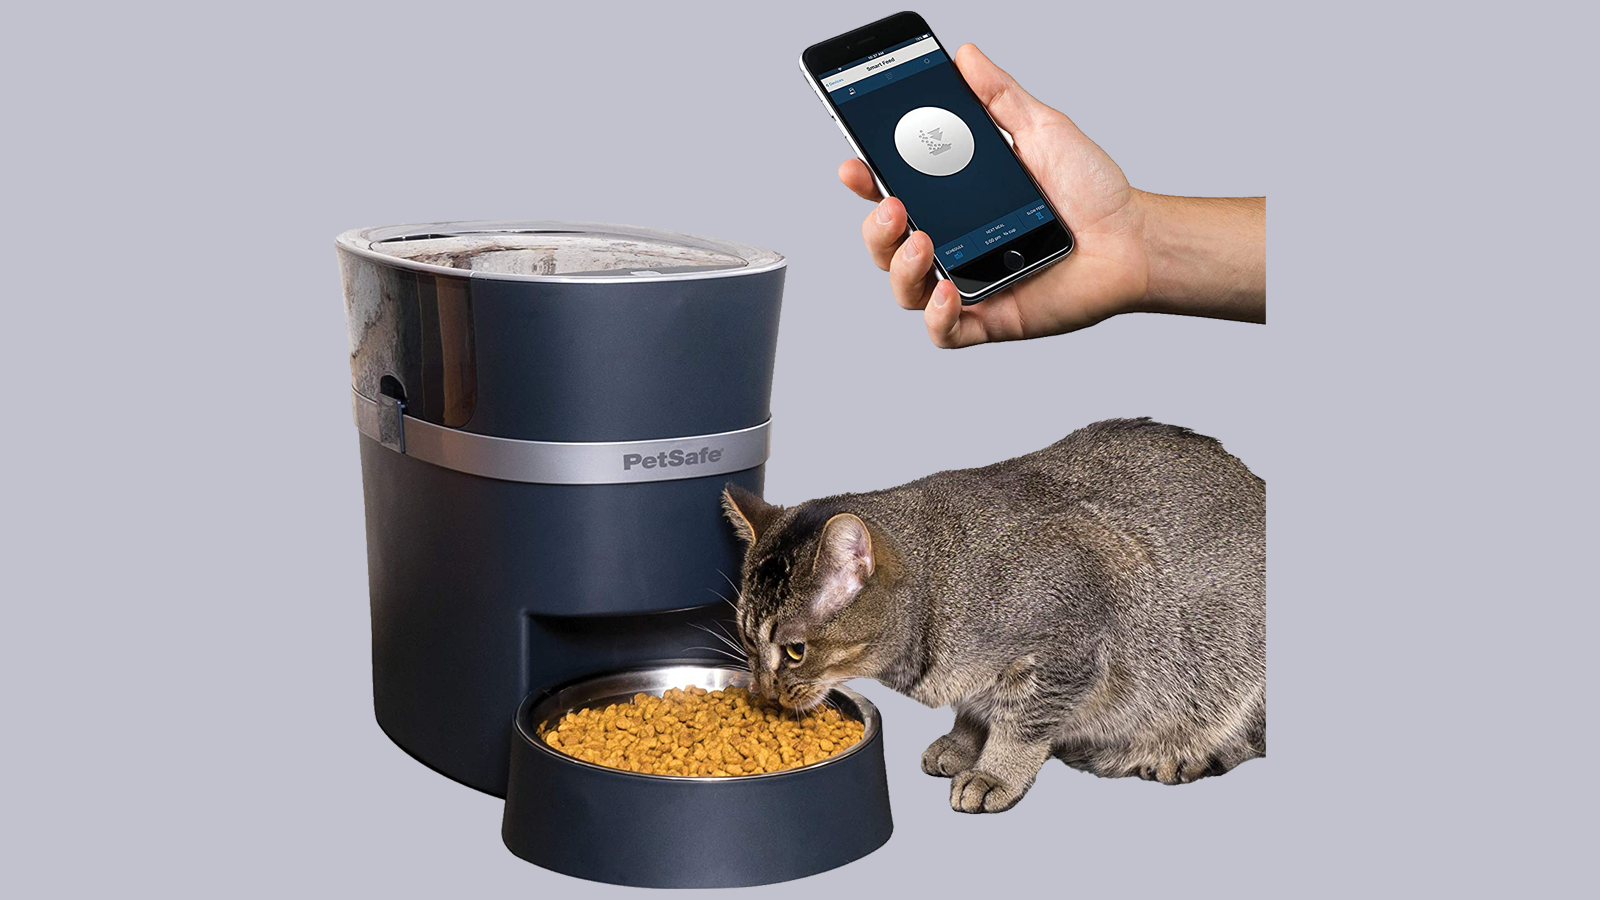 PetSafe Smart Feeder Pet Feeder với mèo đang ăn và bàn tay nổi đang cầm điện thoại thông minh có mở ứng dụng đồng hành